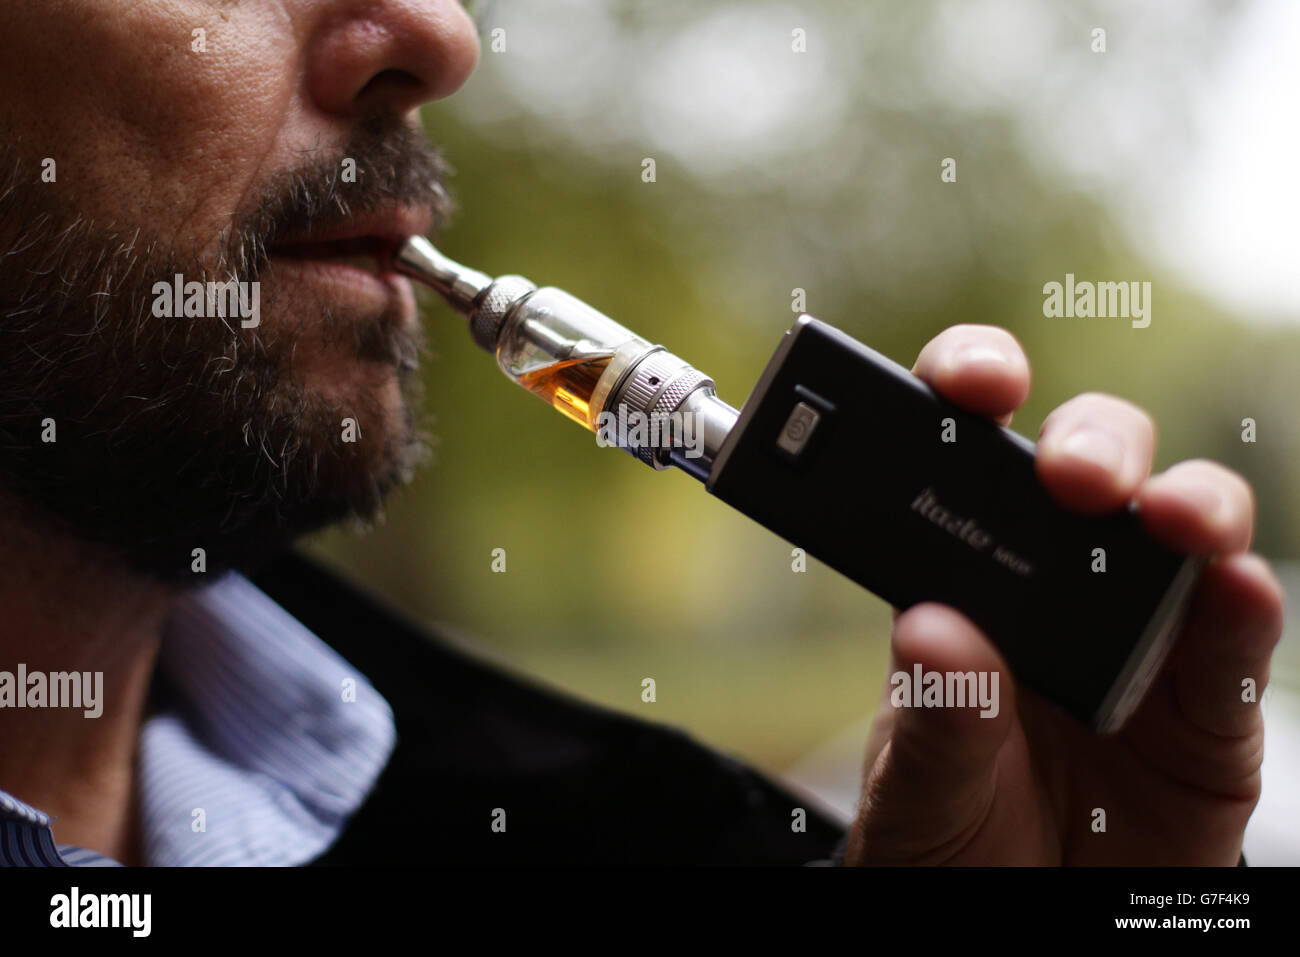 Ein Mann, der in London eine elektronische Zigarette (E-Zigarette, persönlicher Vaporizer (PV) oder elektronisches Nikotinausgabesystem (ENDS)) raucht. Stockfoto